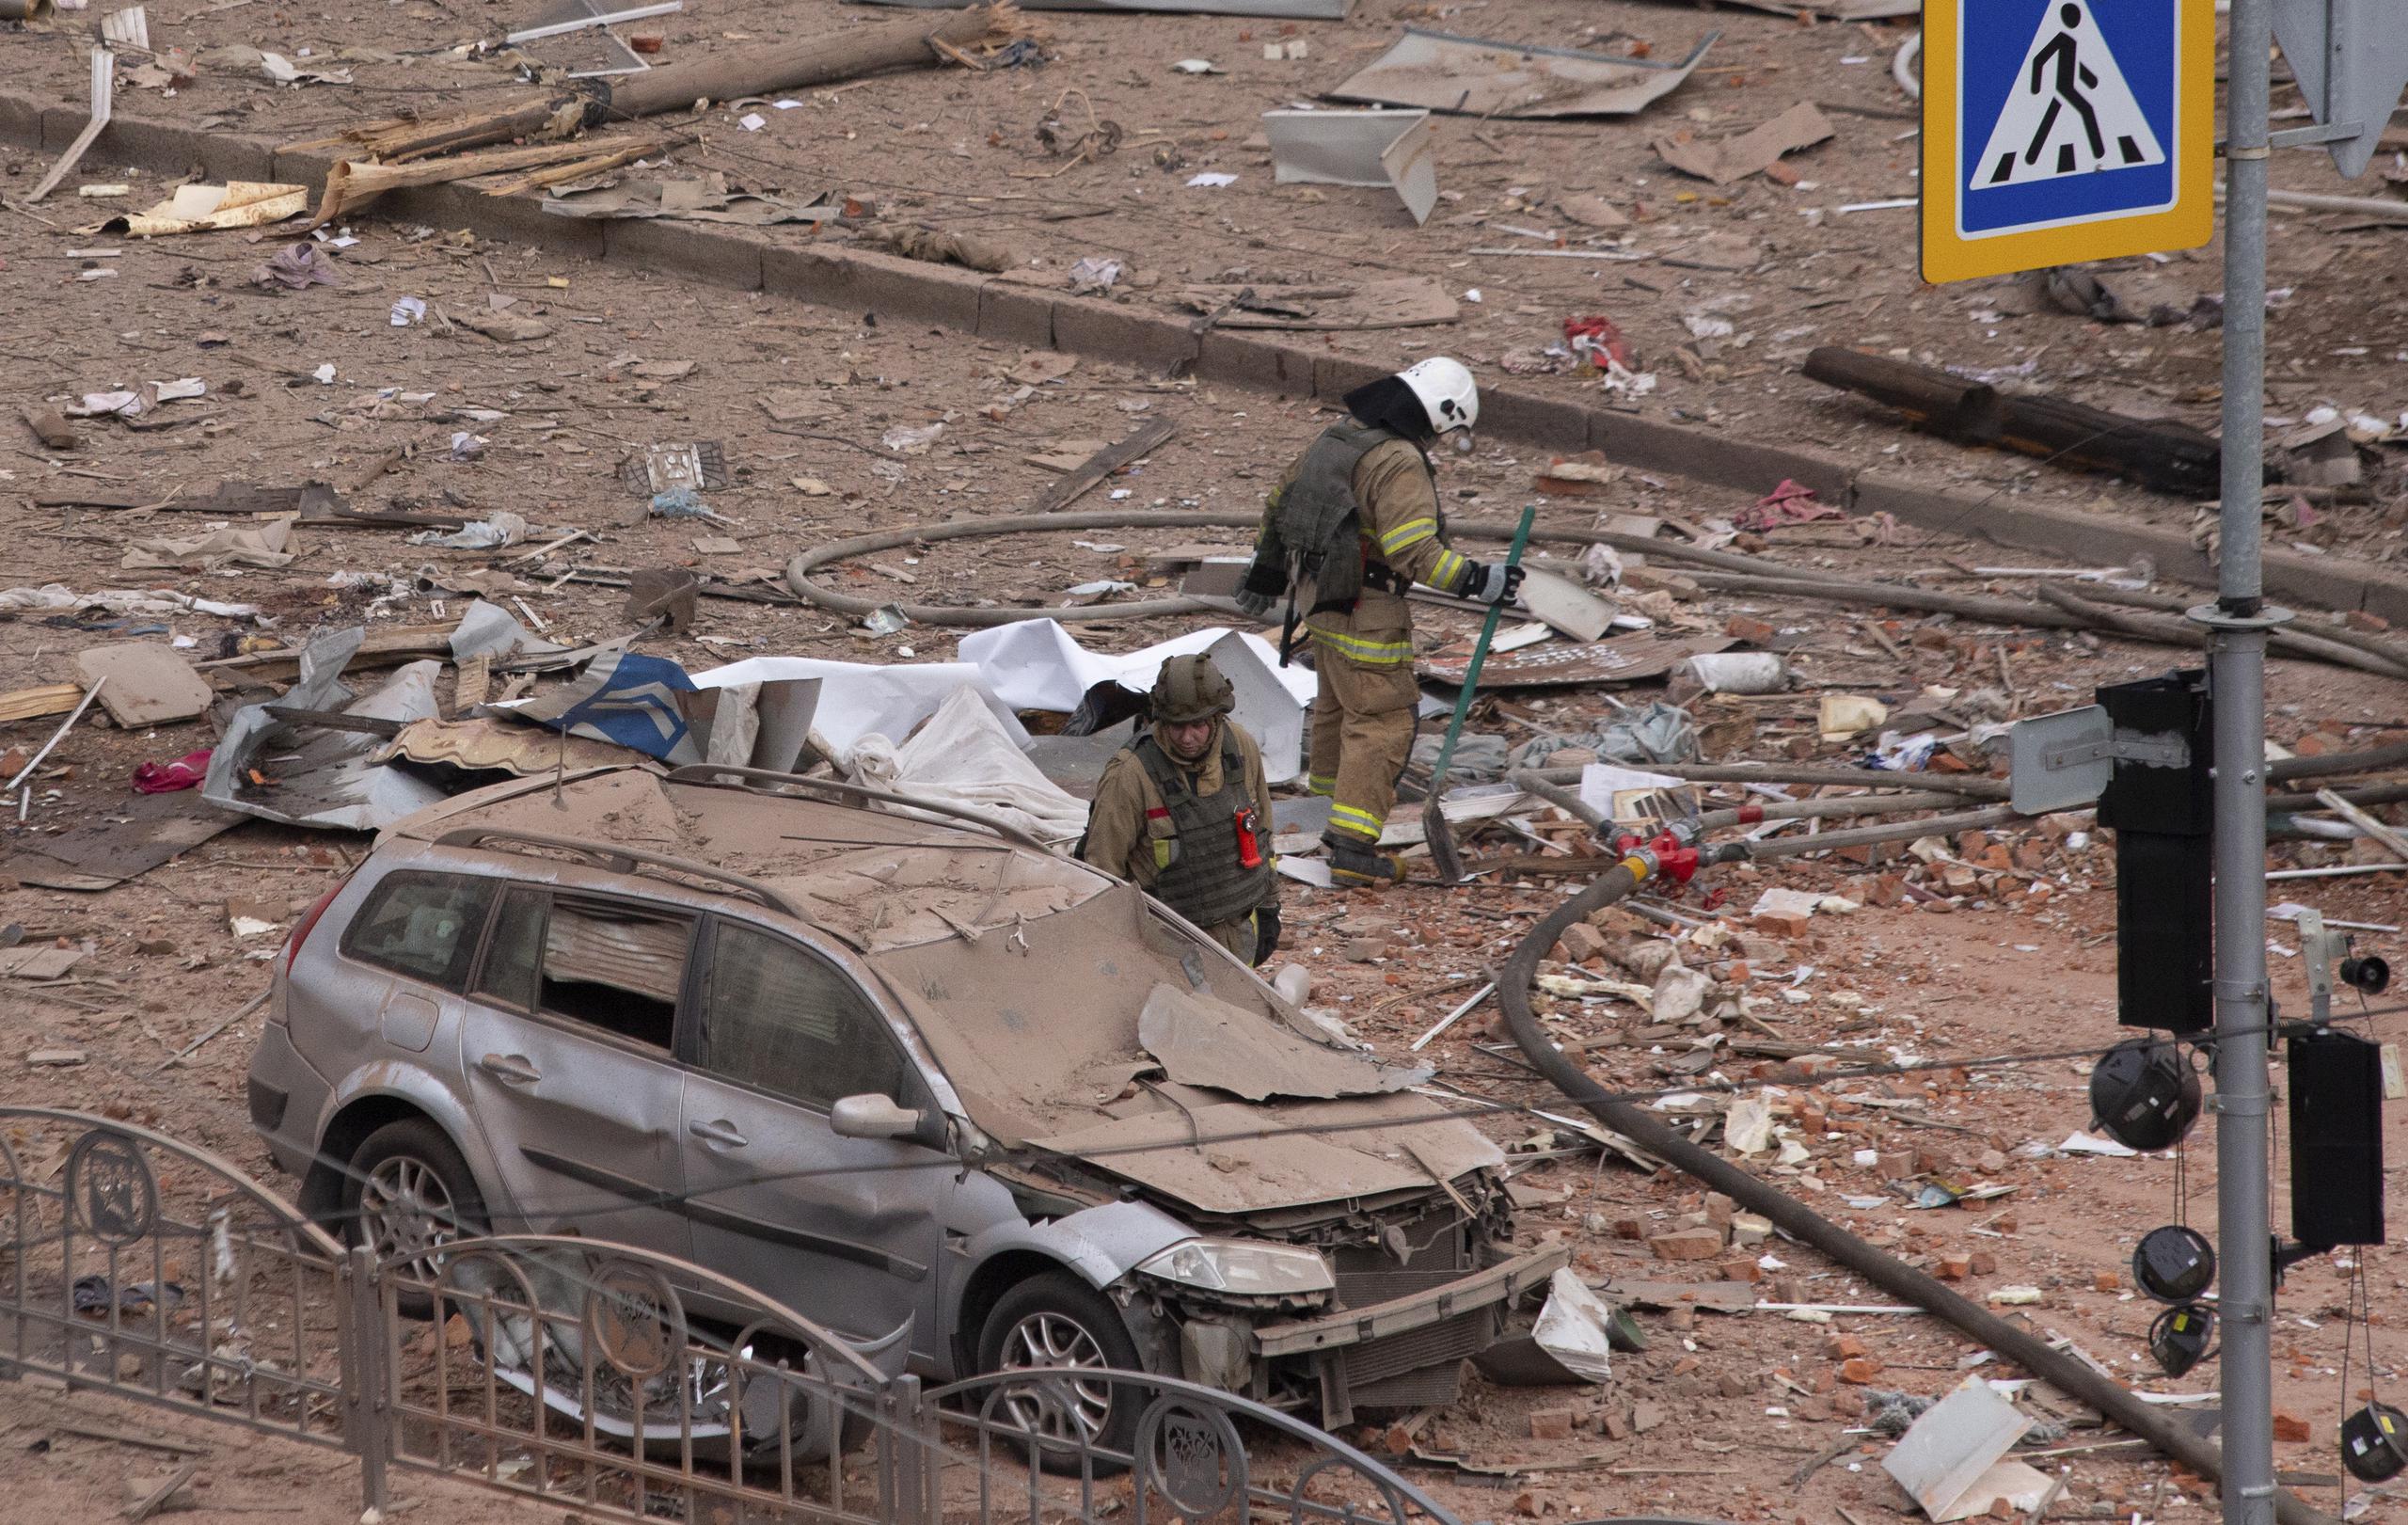 Los escombros dejados por el ataque ruso en Járkov, en el noreste de Ucrania. (EFE/EPA/PAVLO PAKHOMENKO)